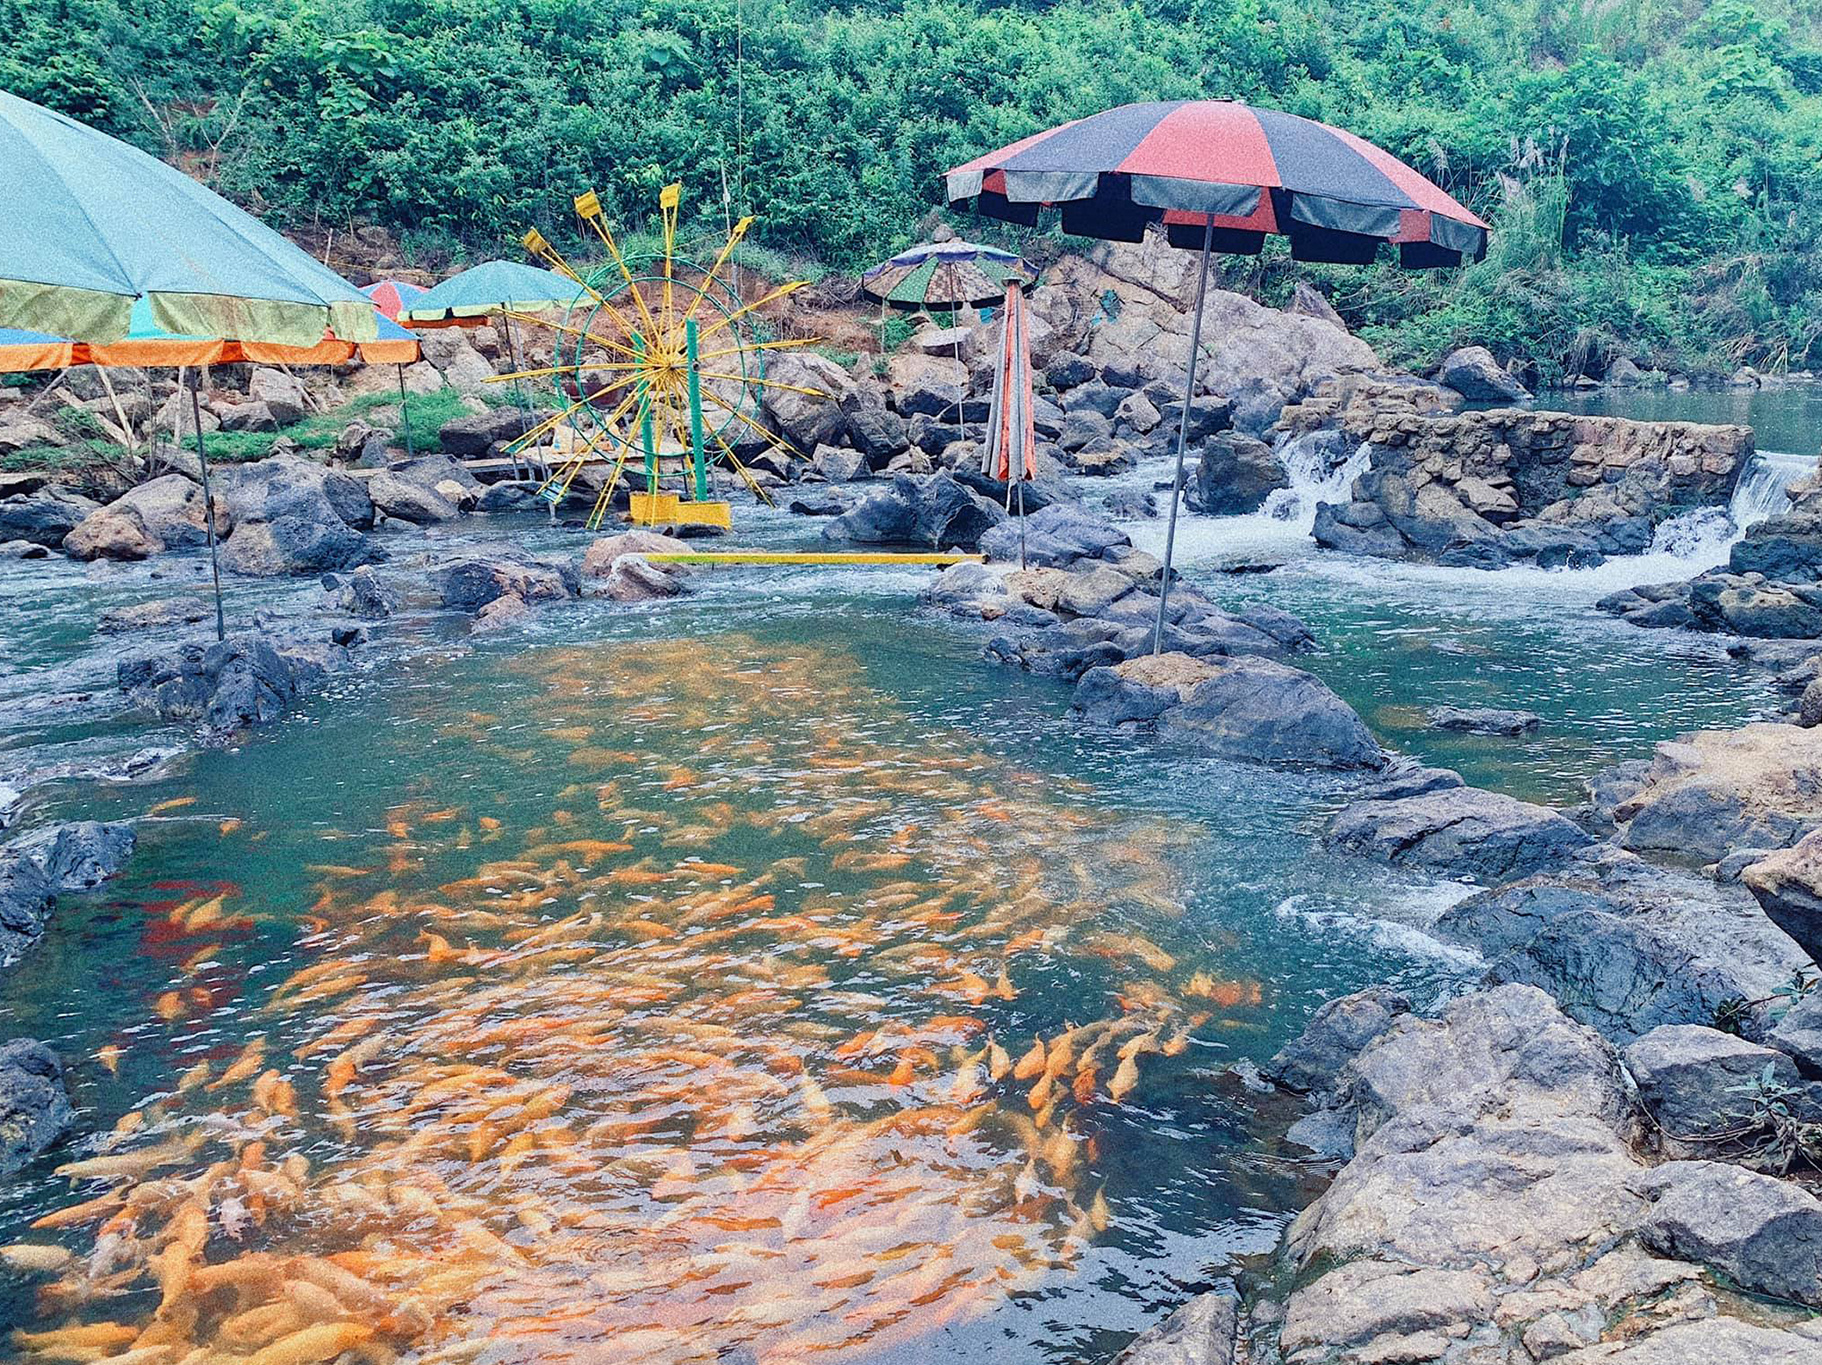 KHE TO FISH STREAM - THAI HOA TOWN